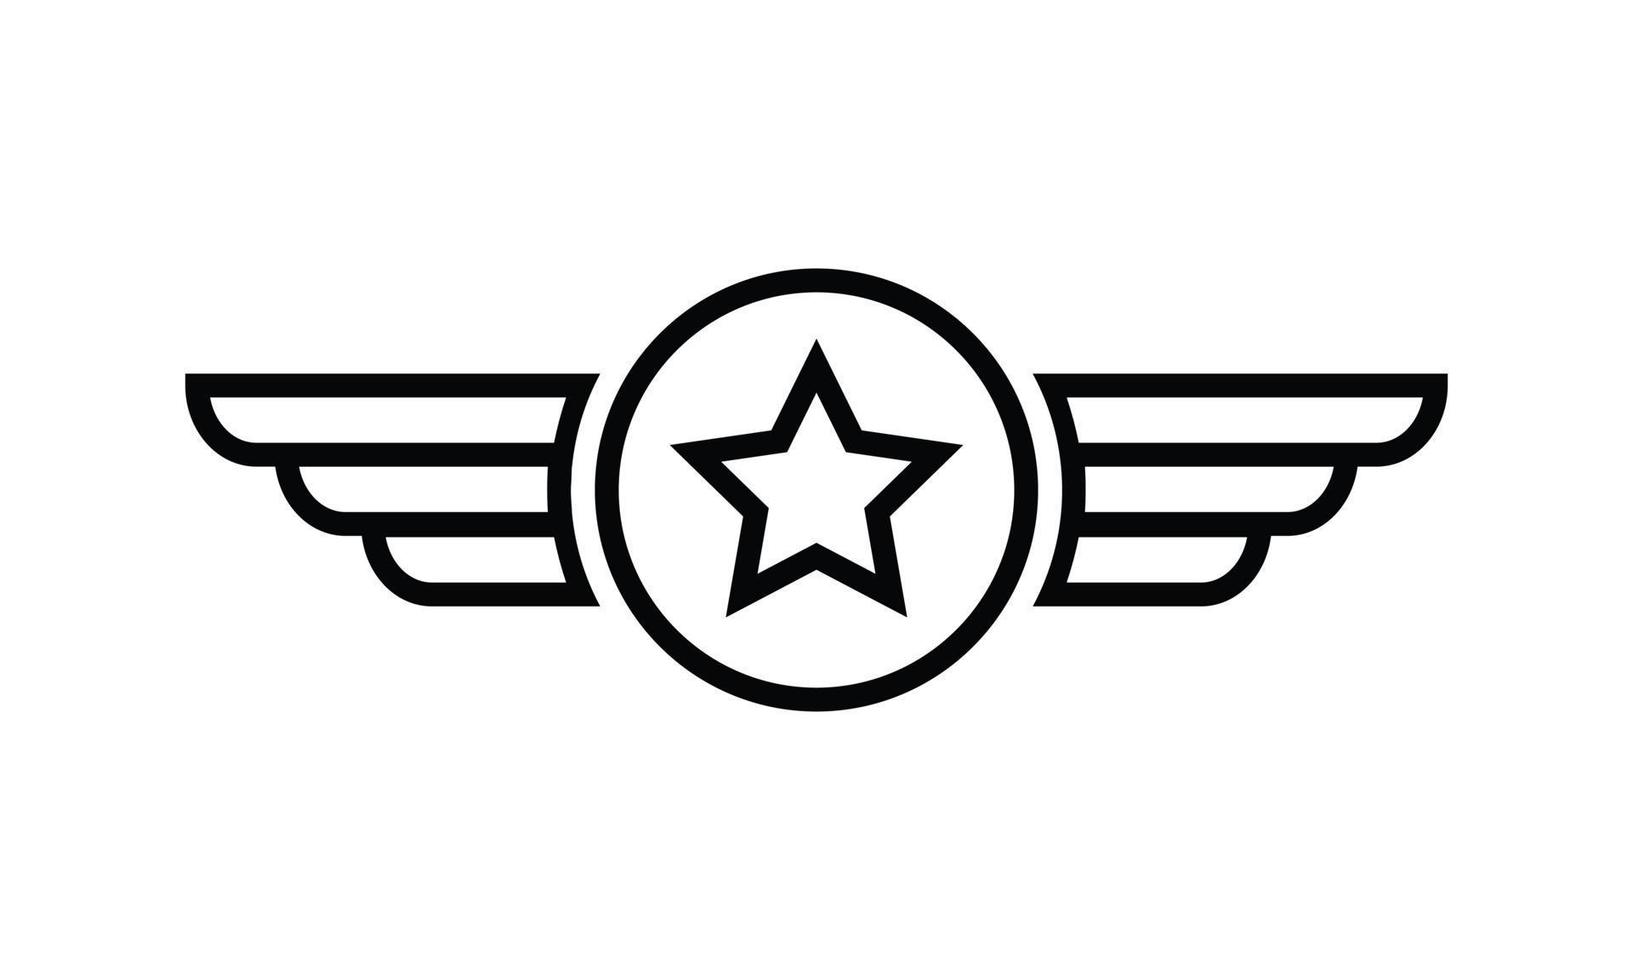 Vintage Emblem Badge Millitary Aviation Logo Vector Design illustration